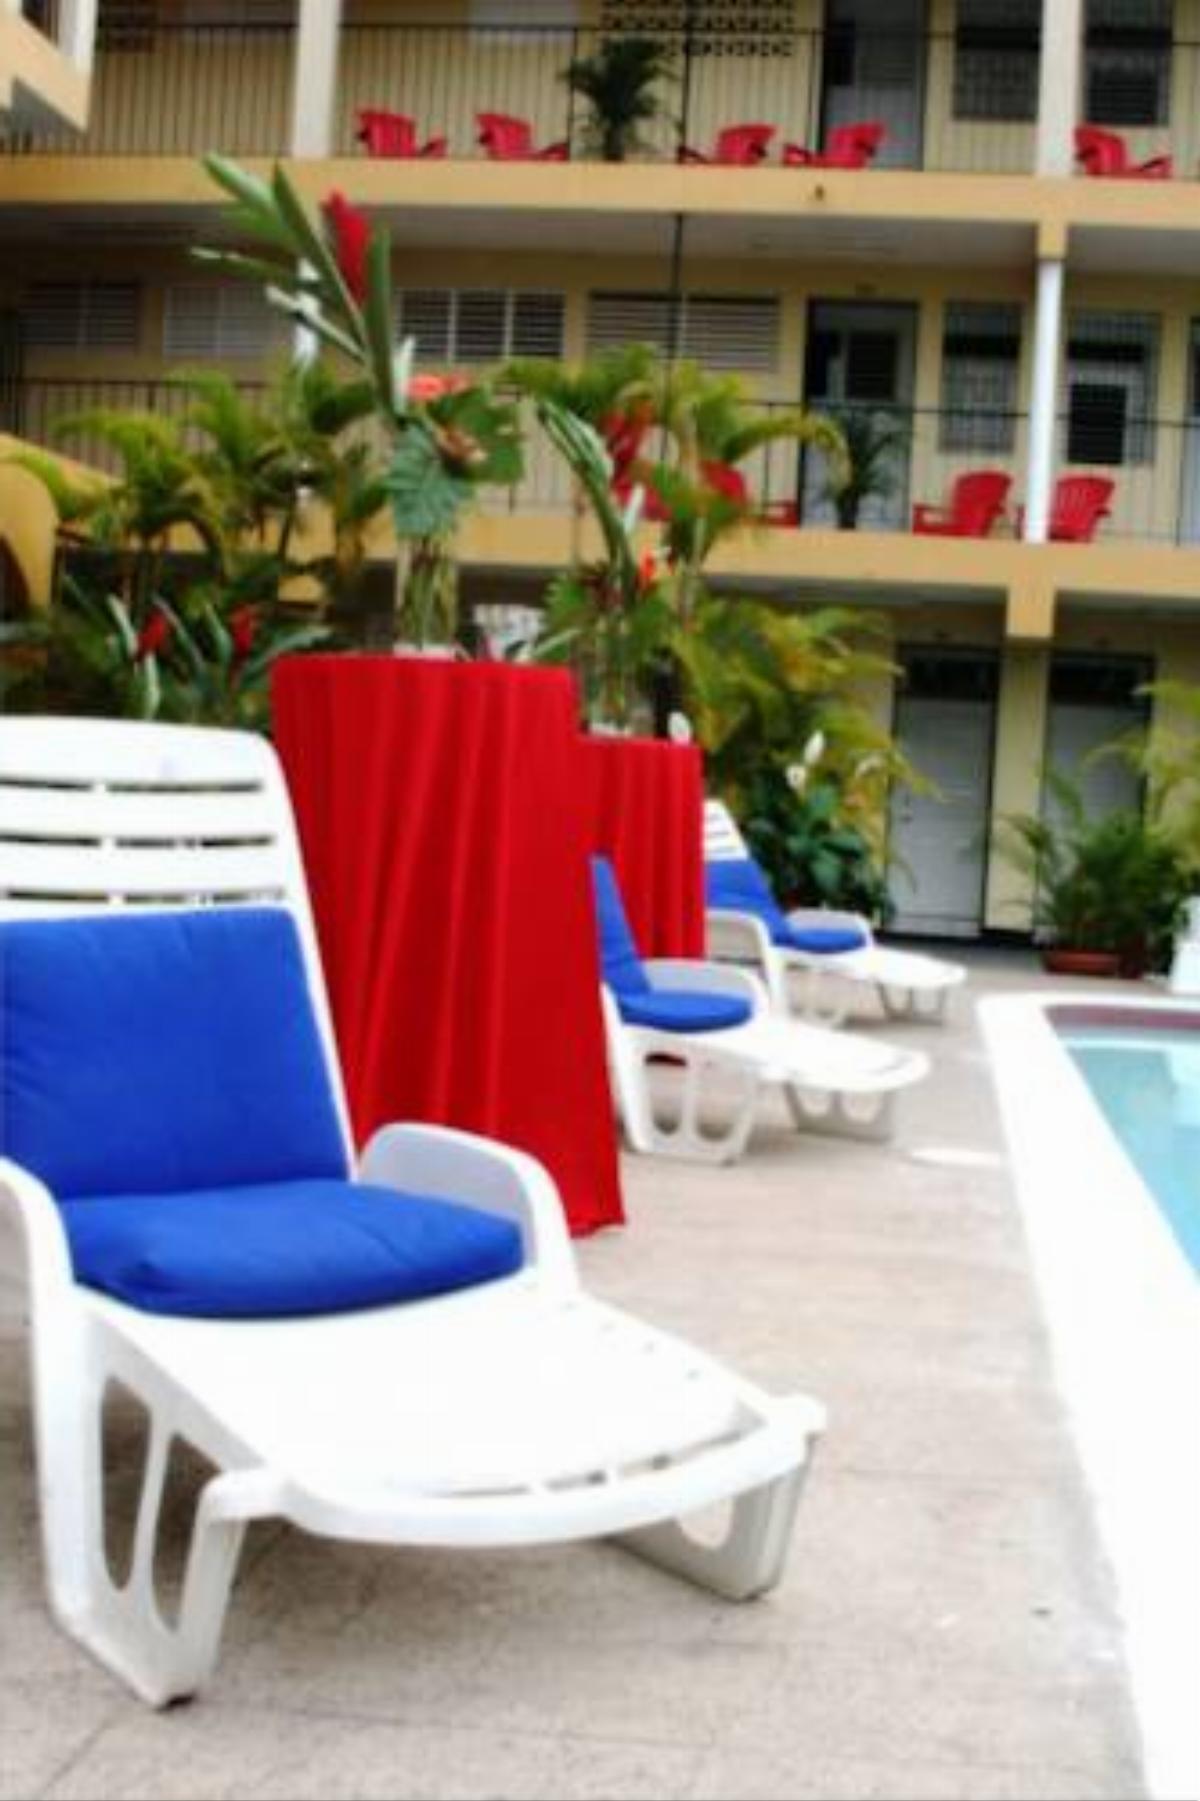 Golf View Hotel Hotel Mandeville Jamaica